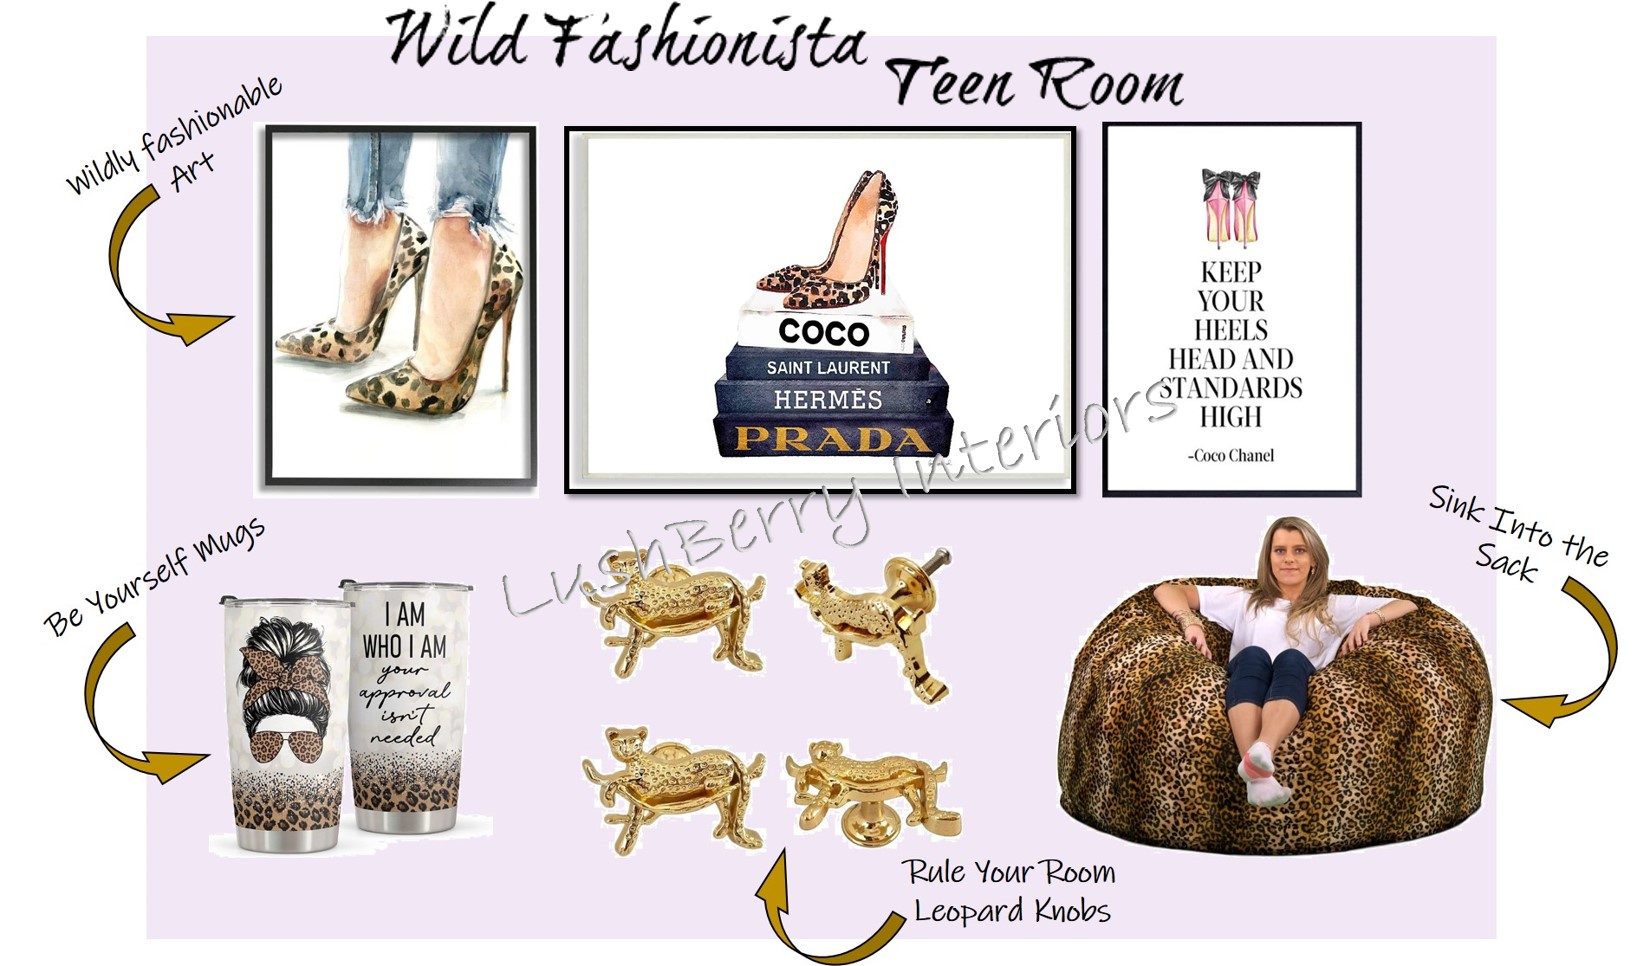 Wild Fashionista Teen Room Moodboard